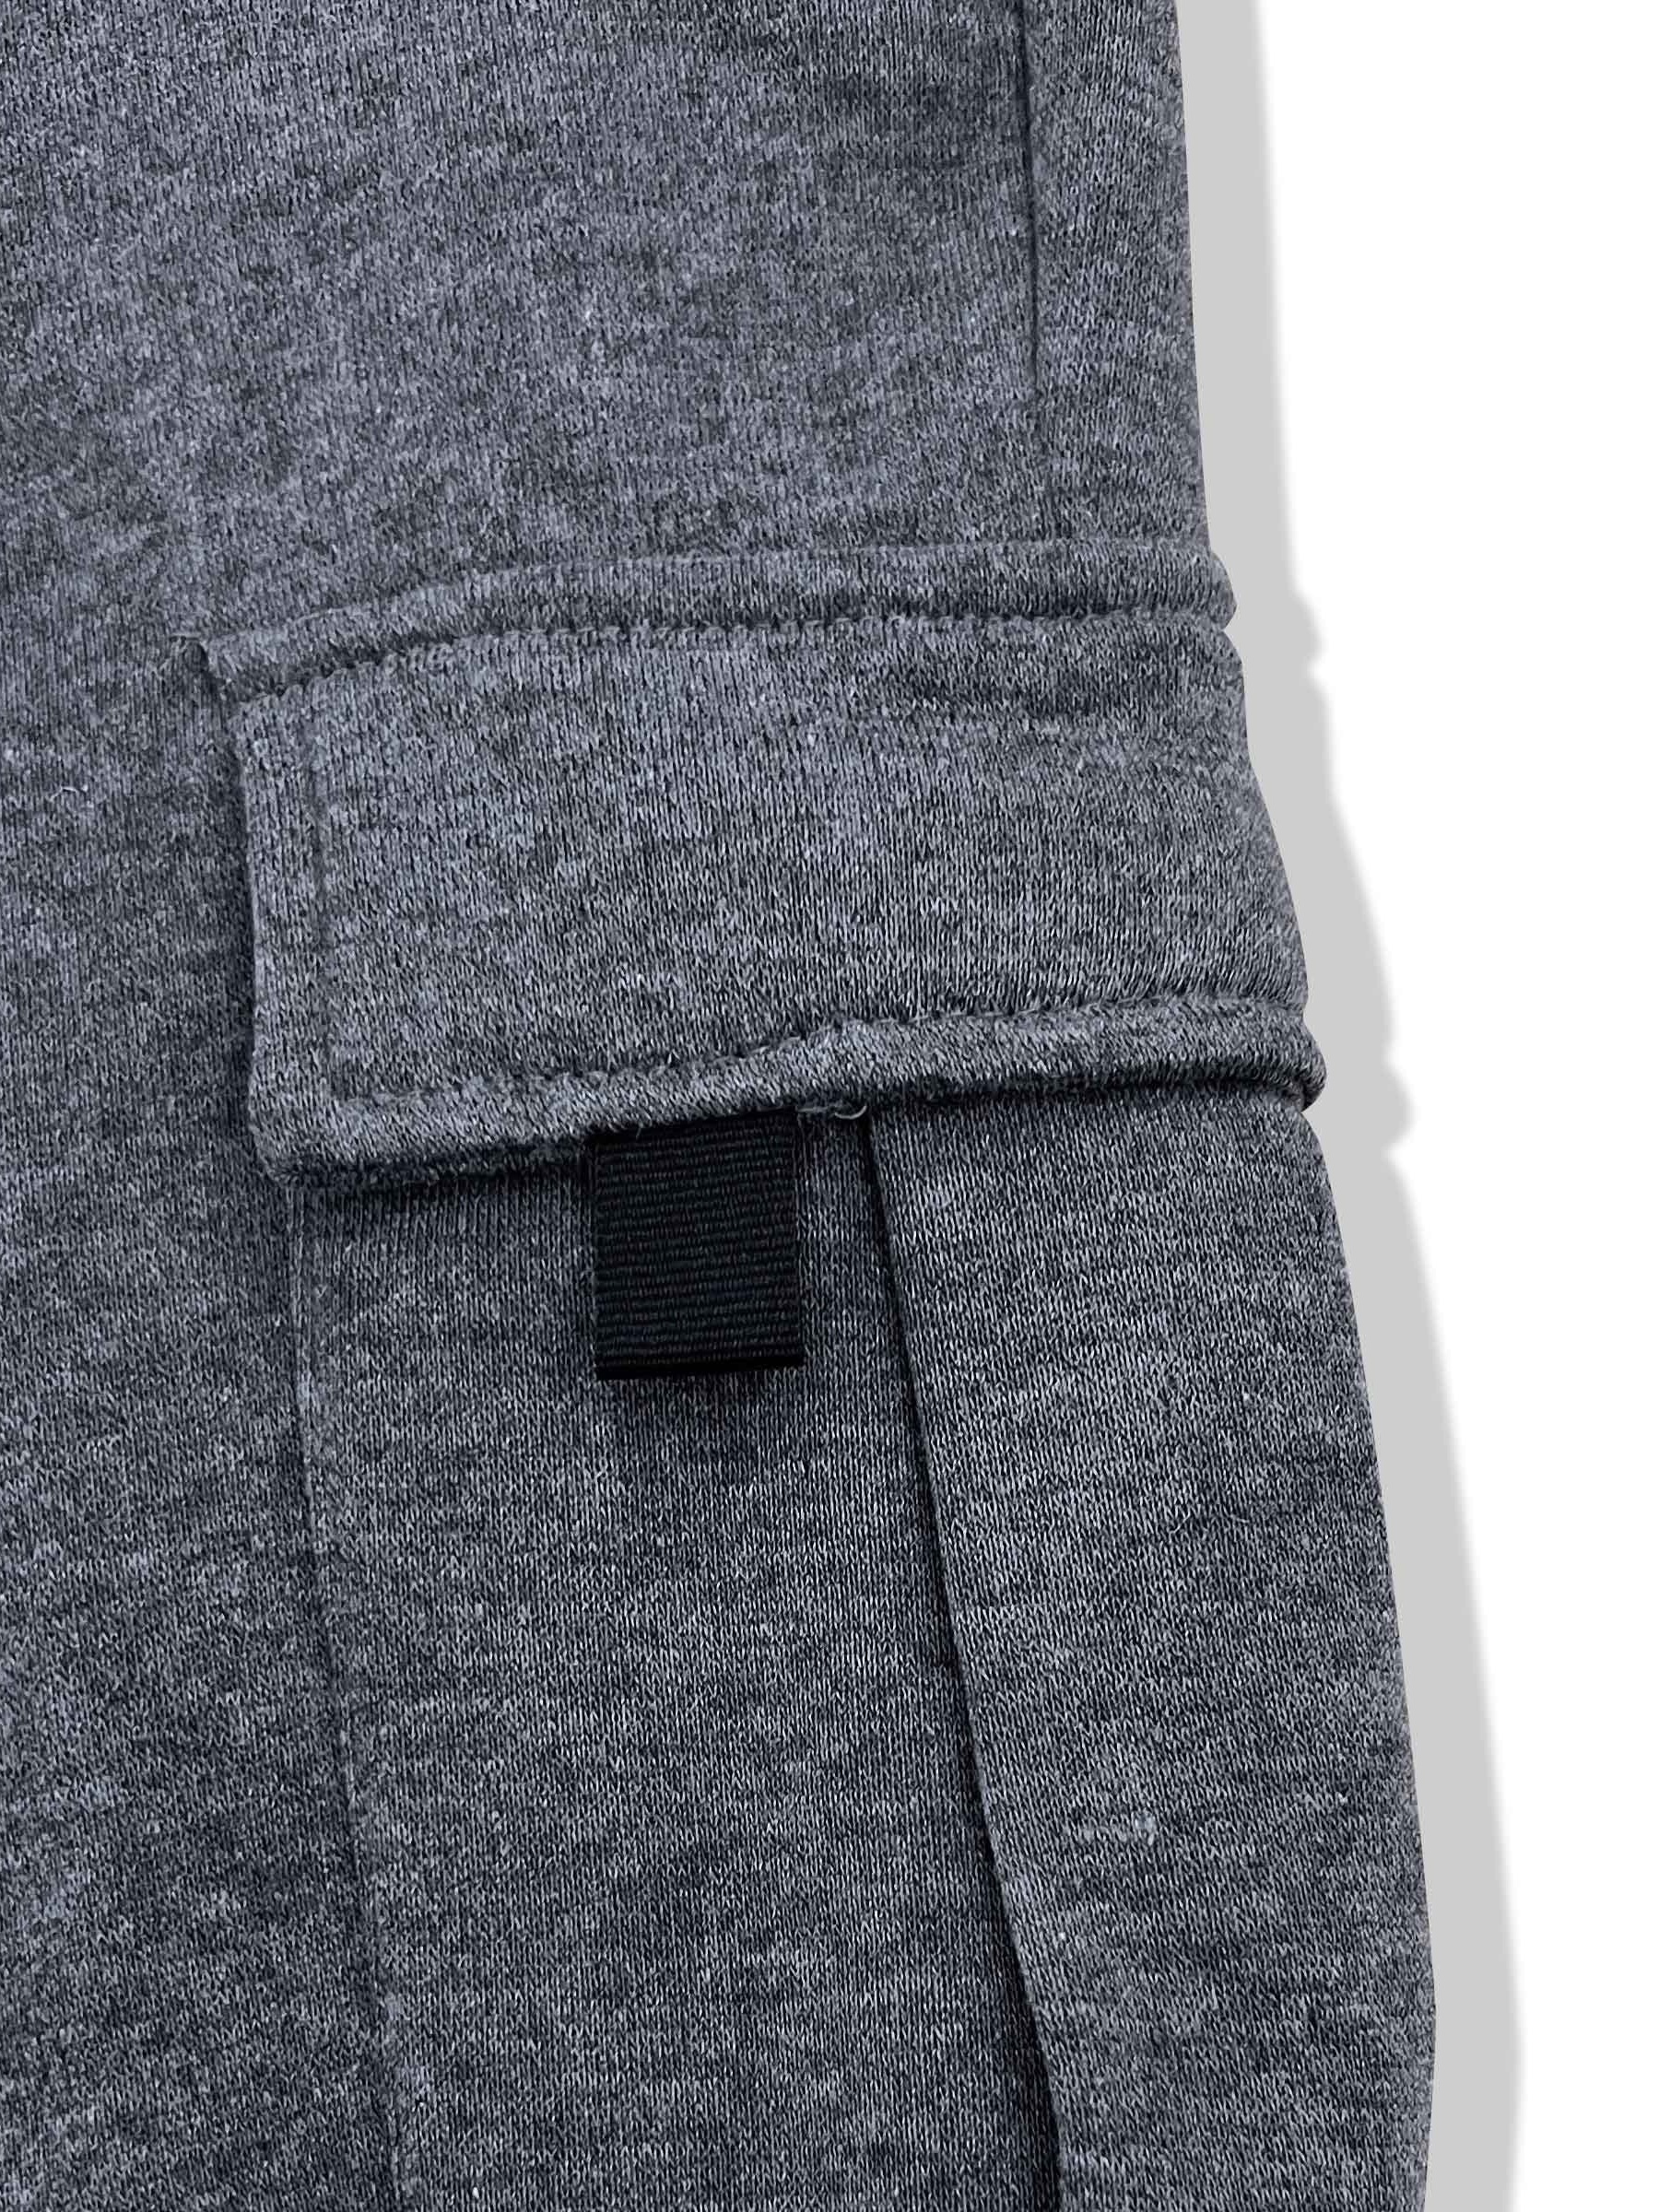 Men's Super Soft Fleece Open Bottom Sweatpants